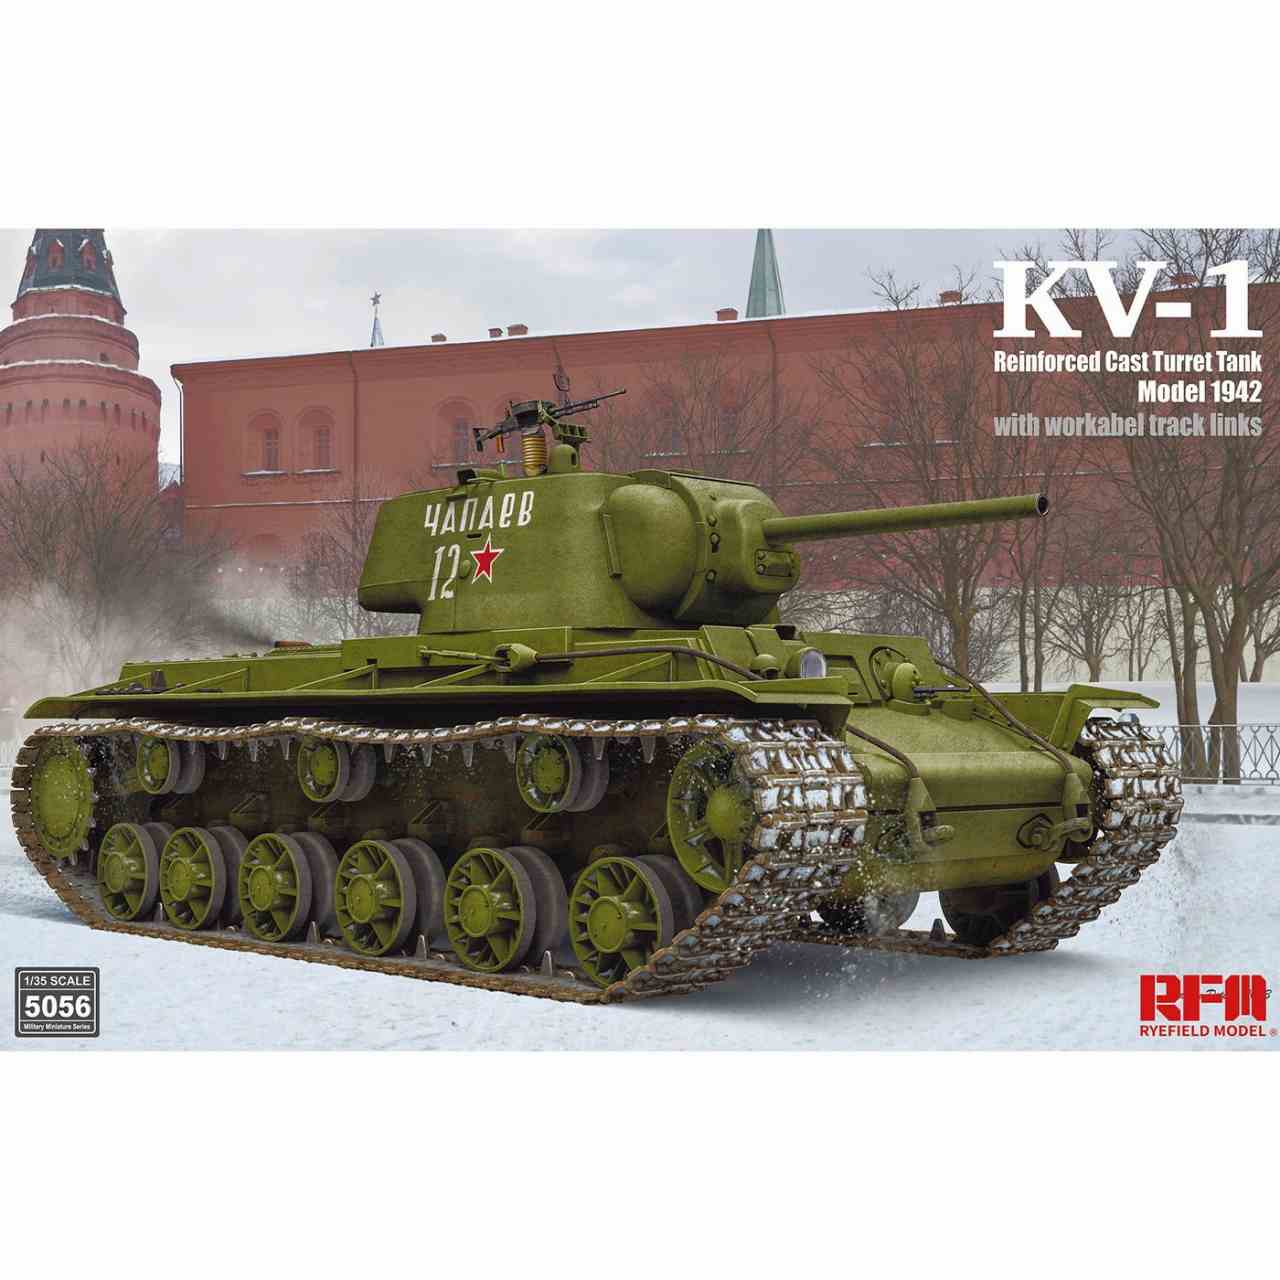 【新製品】5056 1/35 KV-1 Mod.1942 装甲強化型鋳造砲塔搭載型 w/可動式履帯